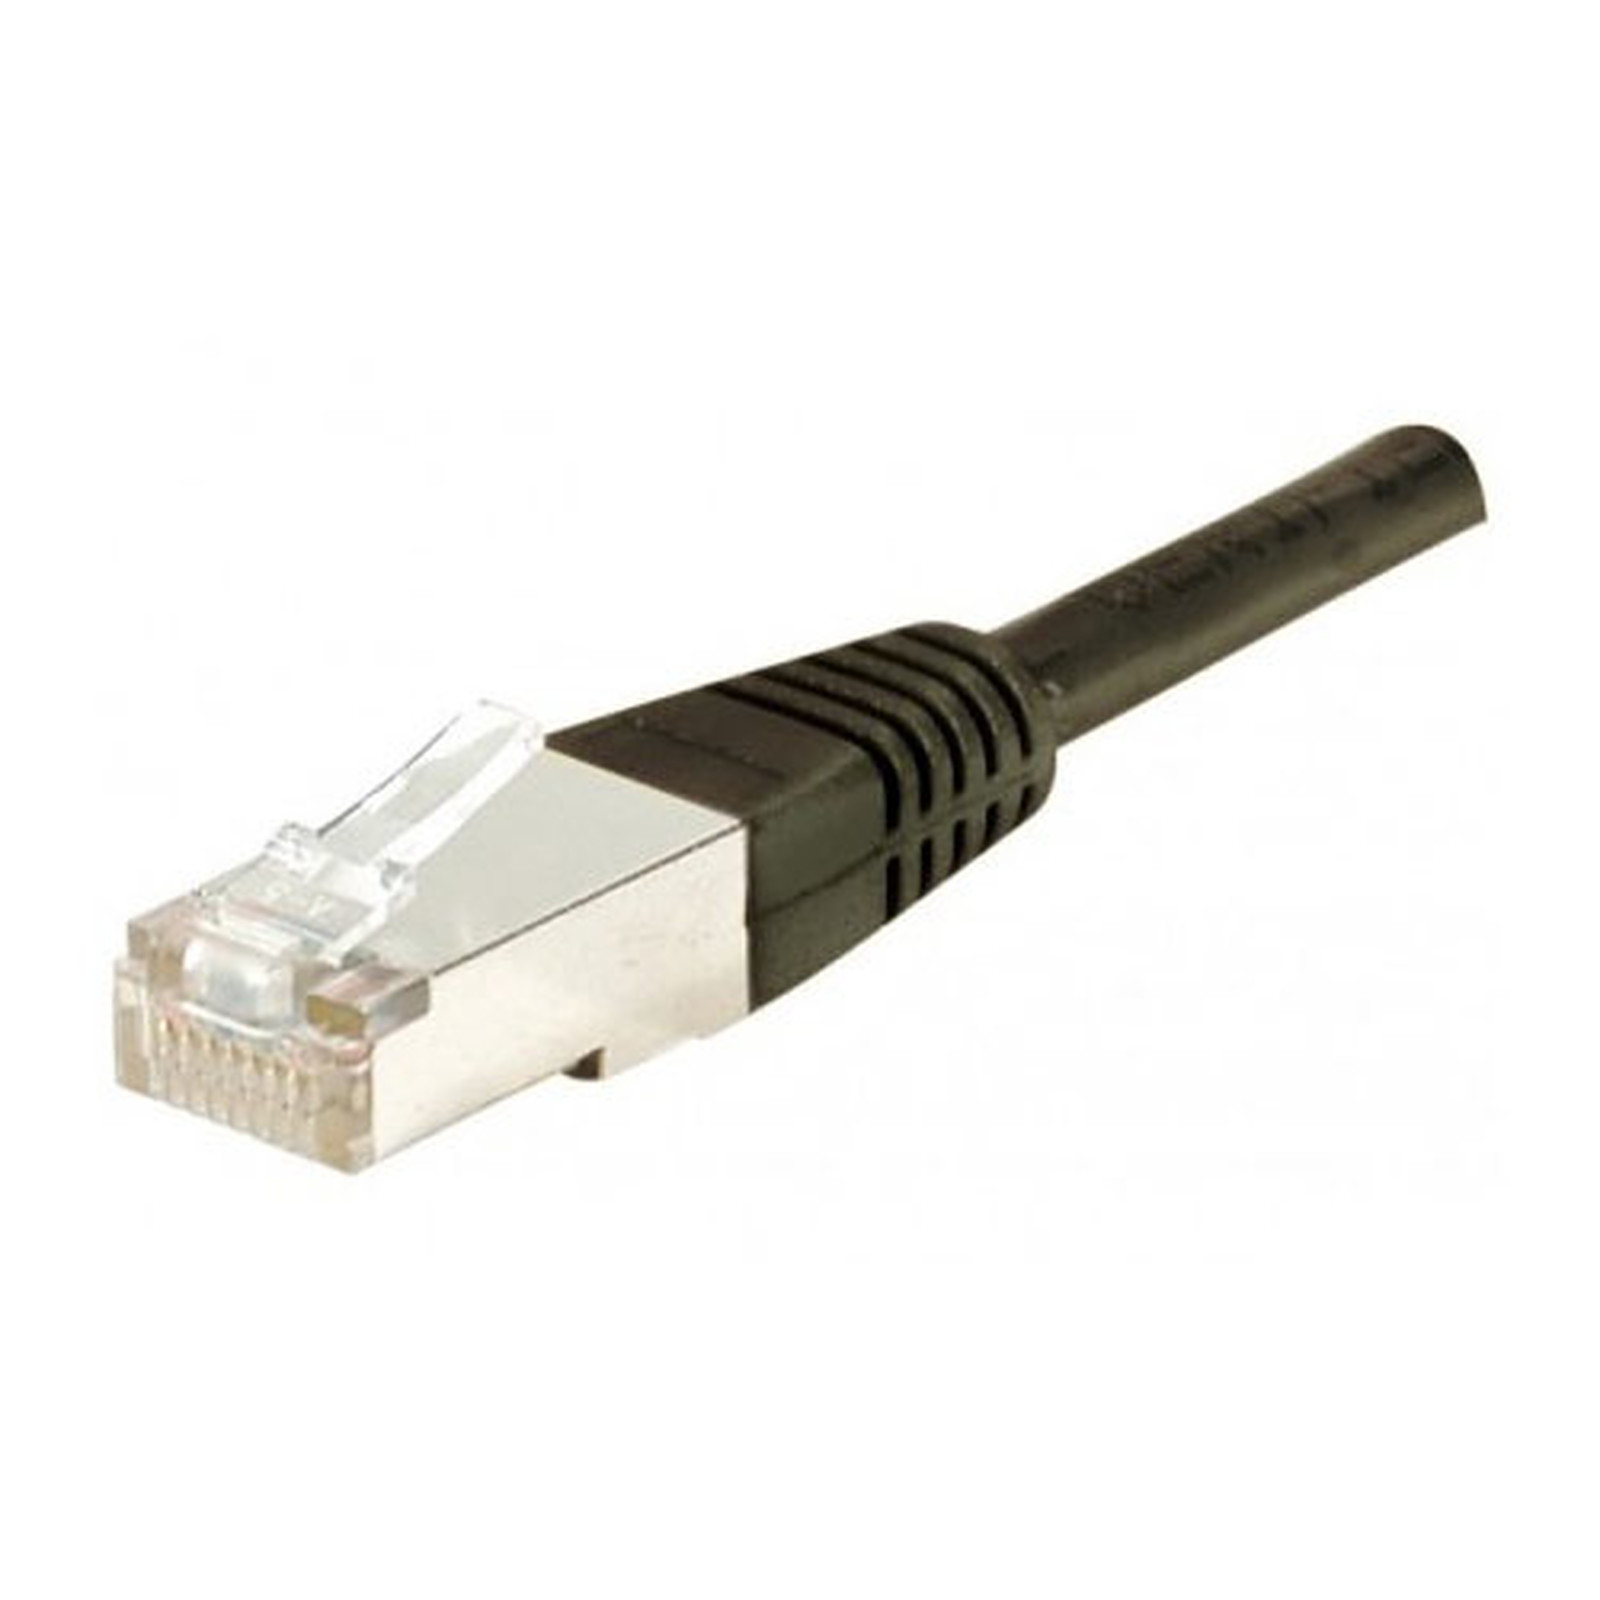 Cable RJ45 categorie 5e F/UTP 1 m (Noir) - Cable RJ45 Generique